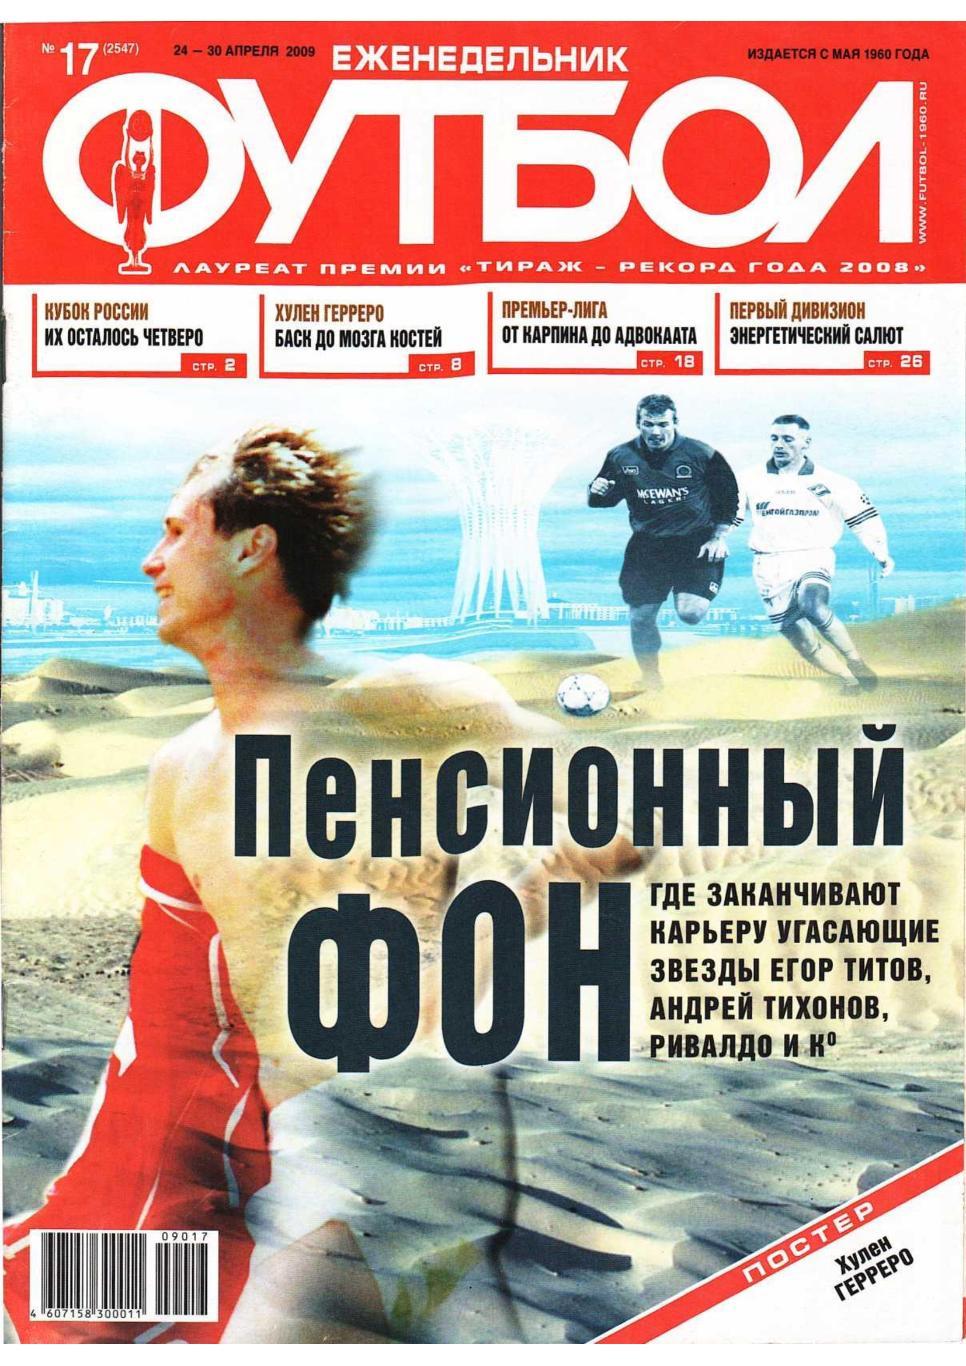 Еженедельник «Футбол». № 17. 24– 30 апреля 2009.